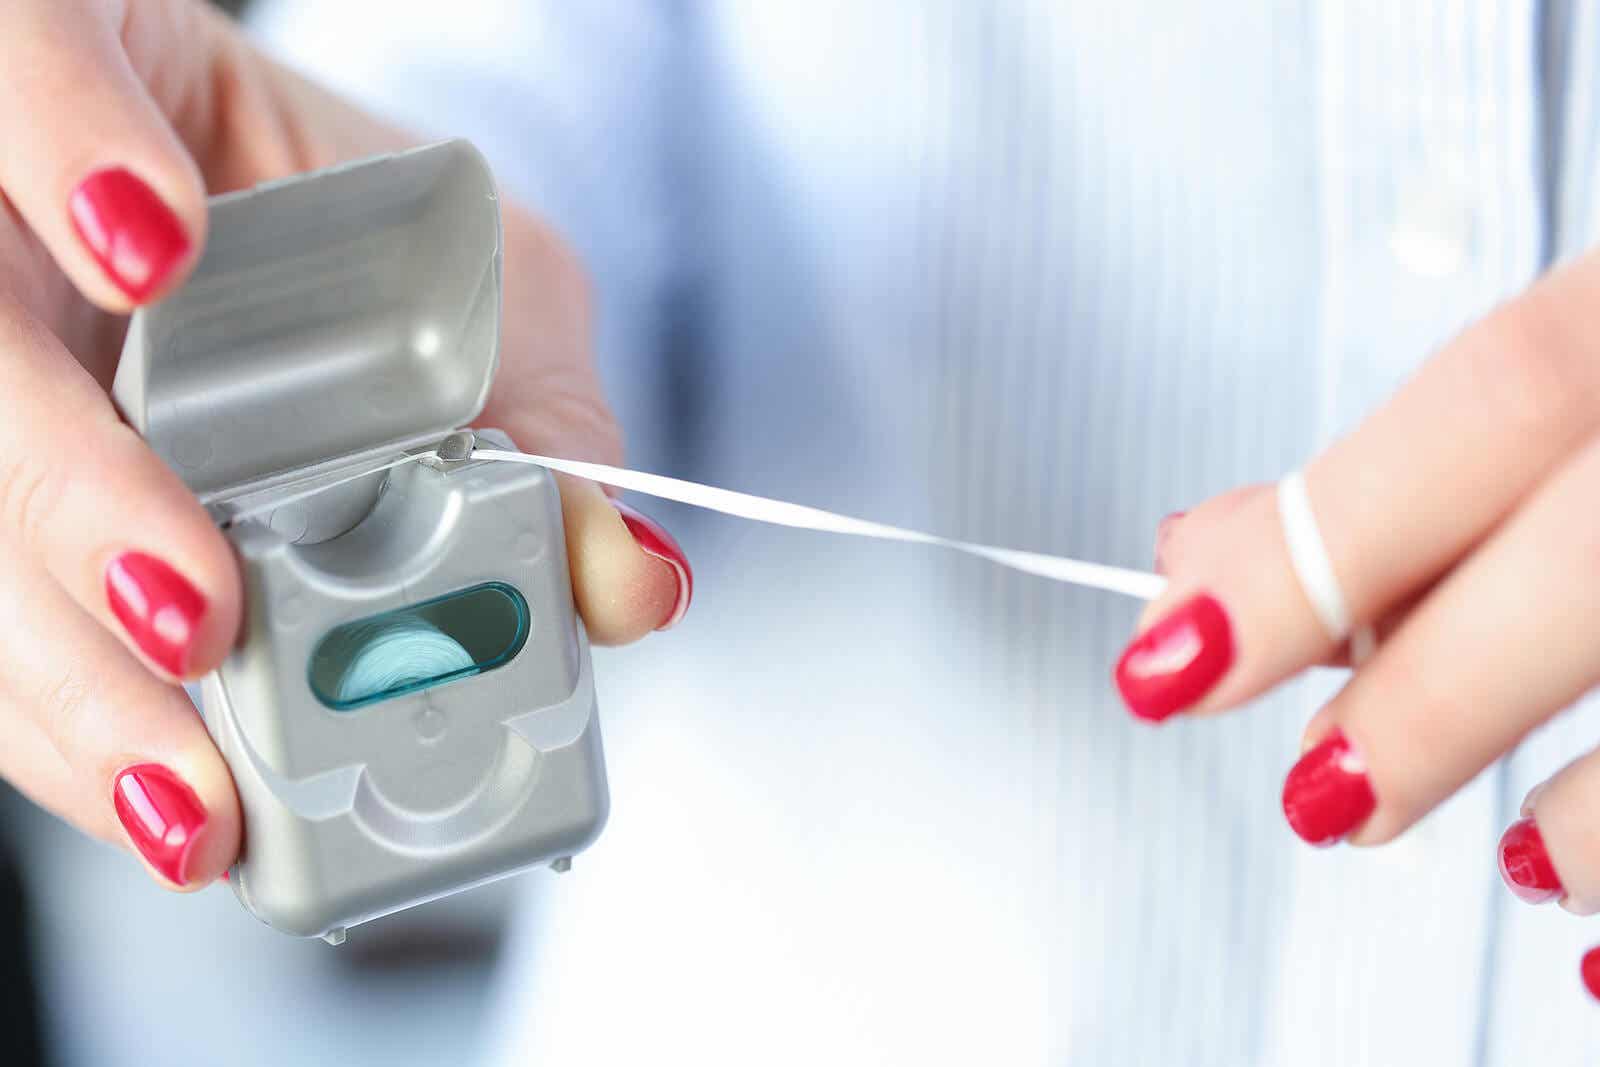 Comment utiliser correctement le fil dentaire ?